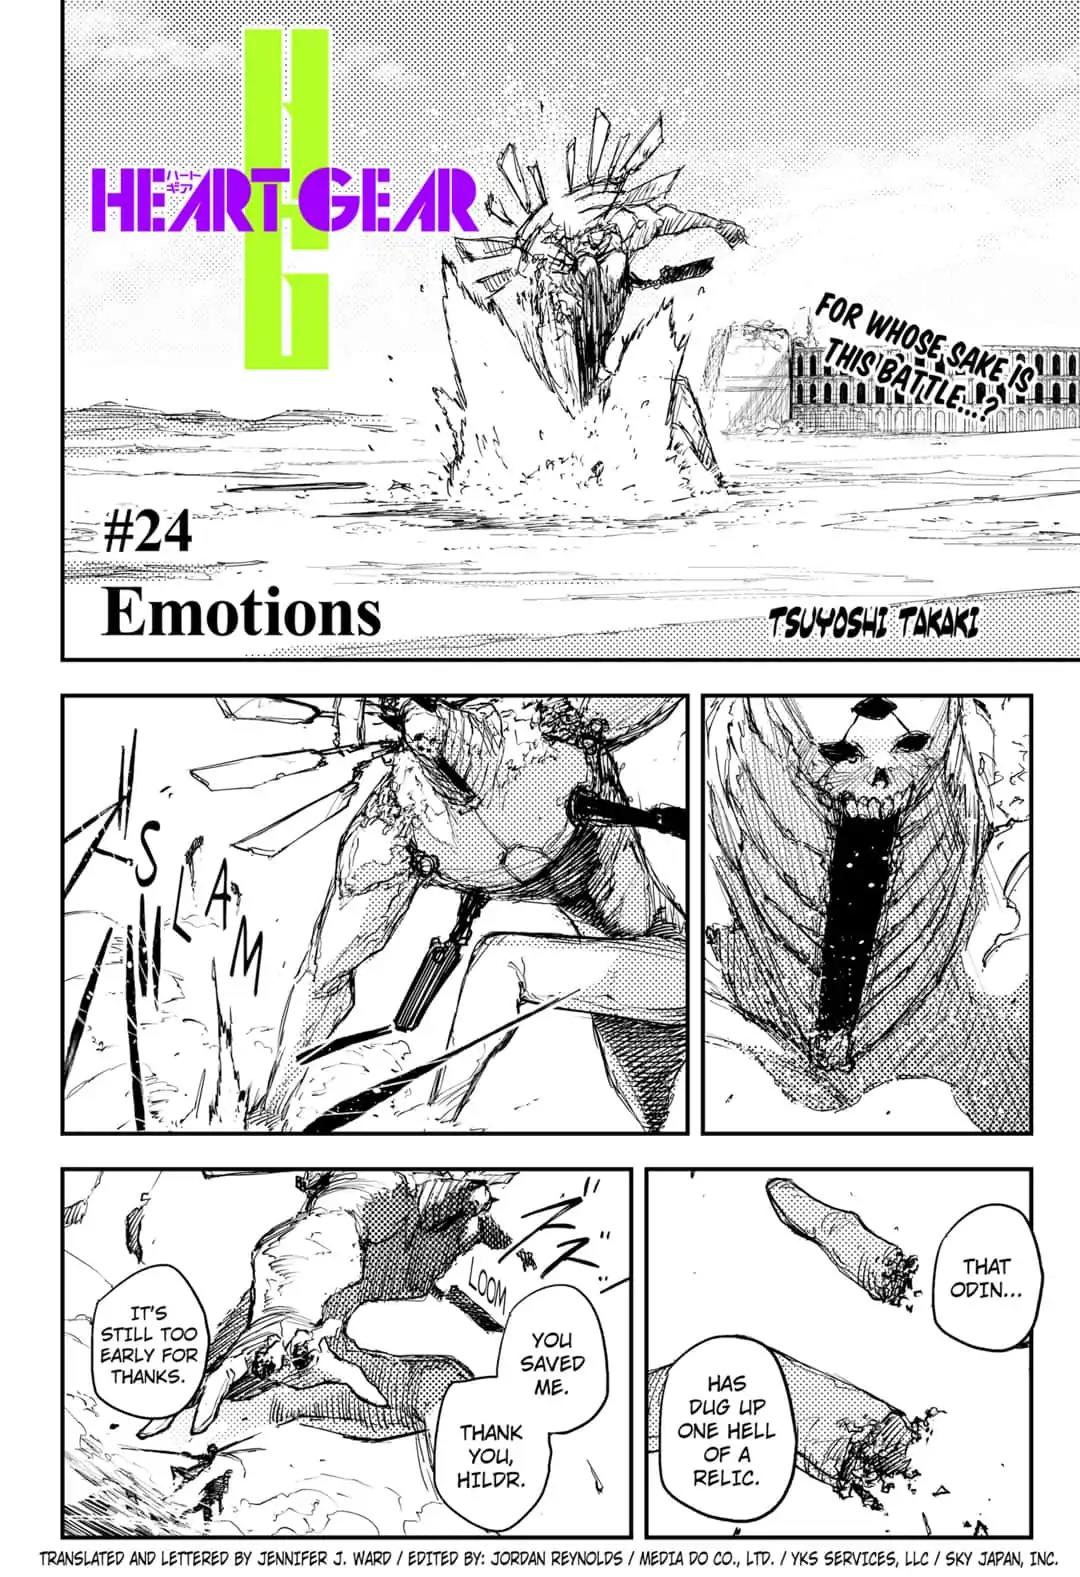 Heart Gear #24 Emotions